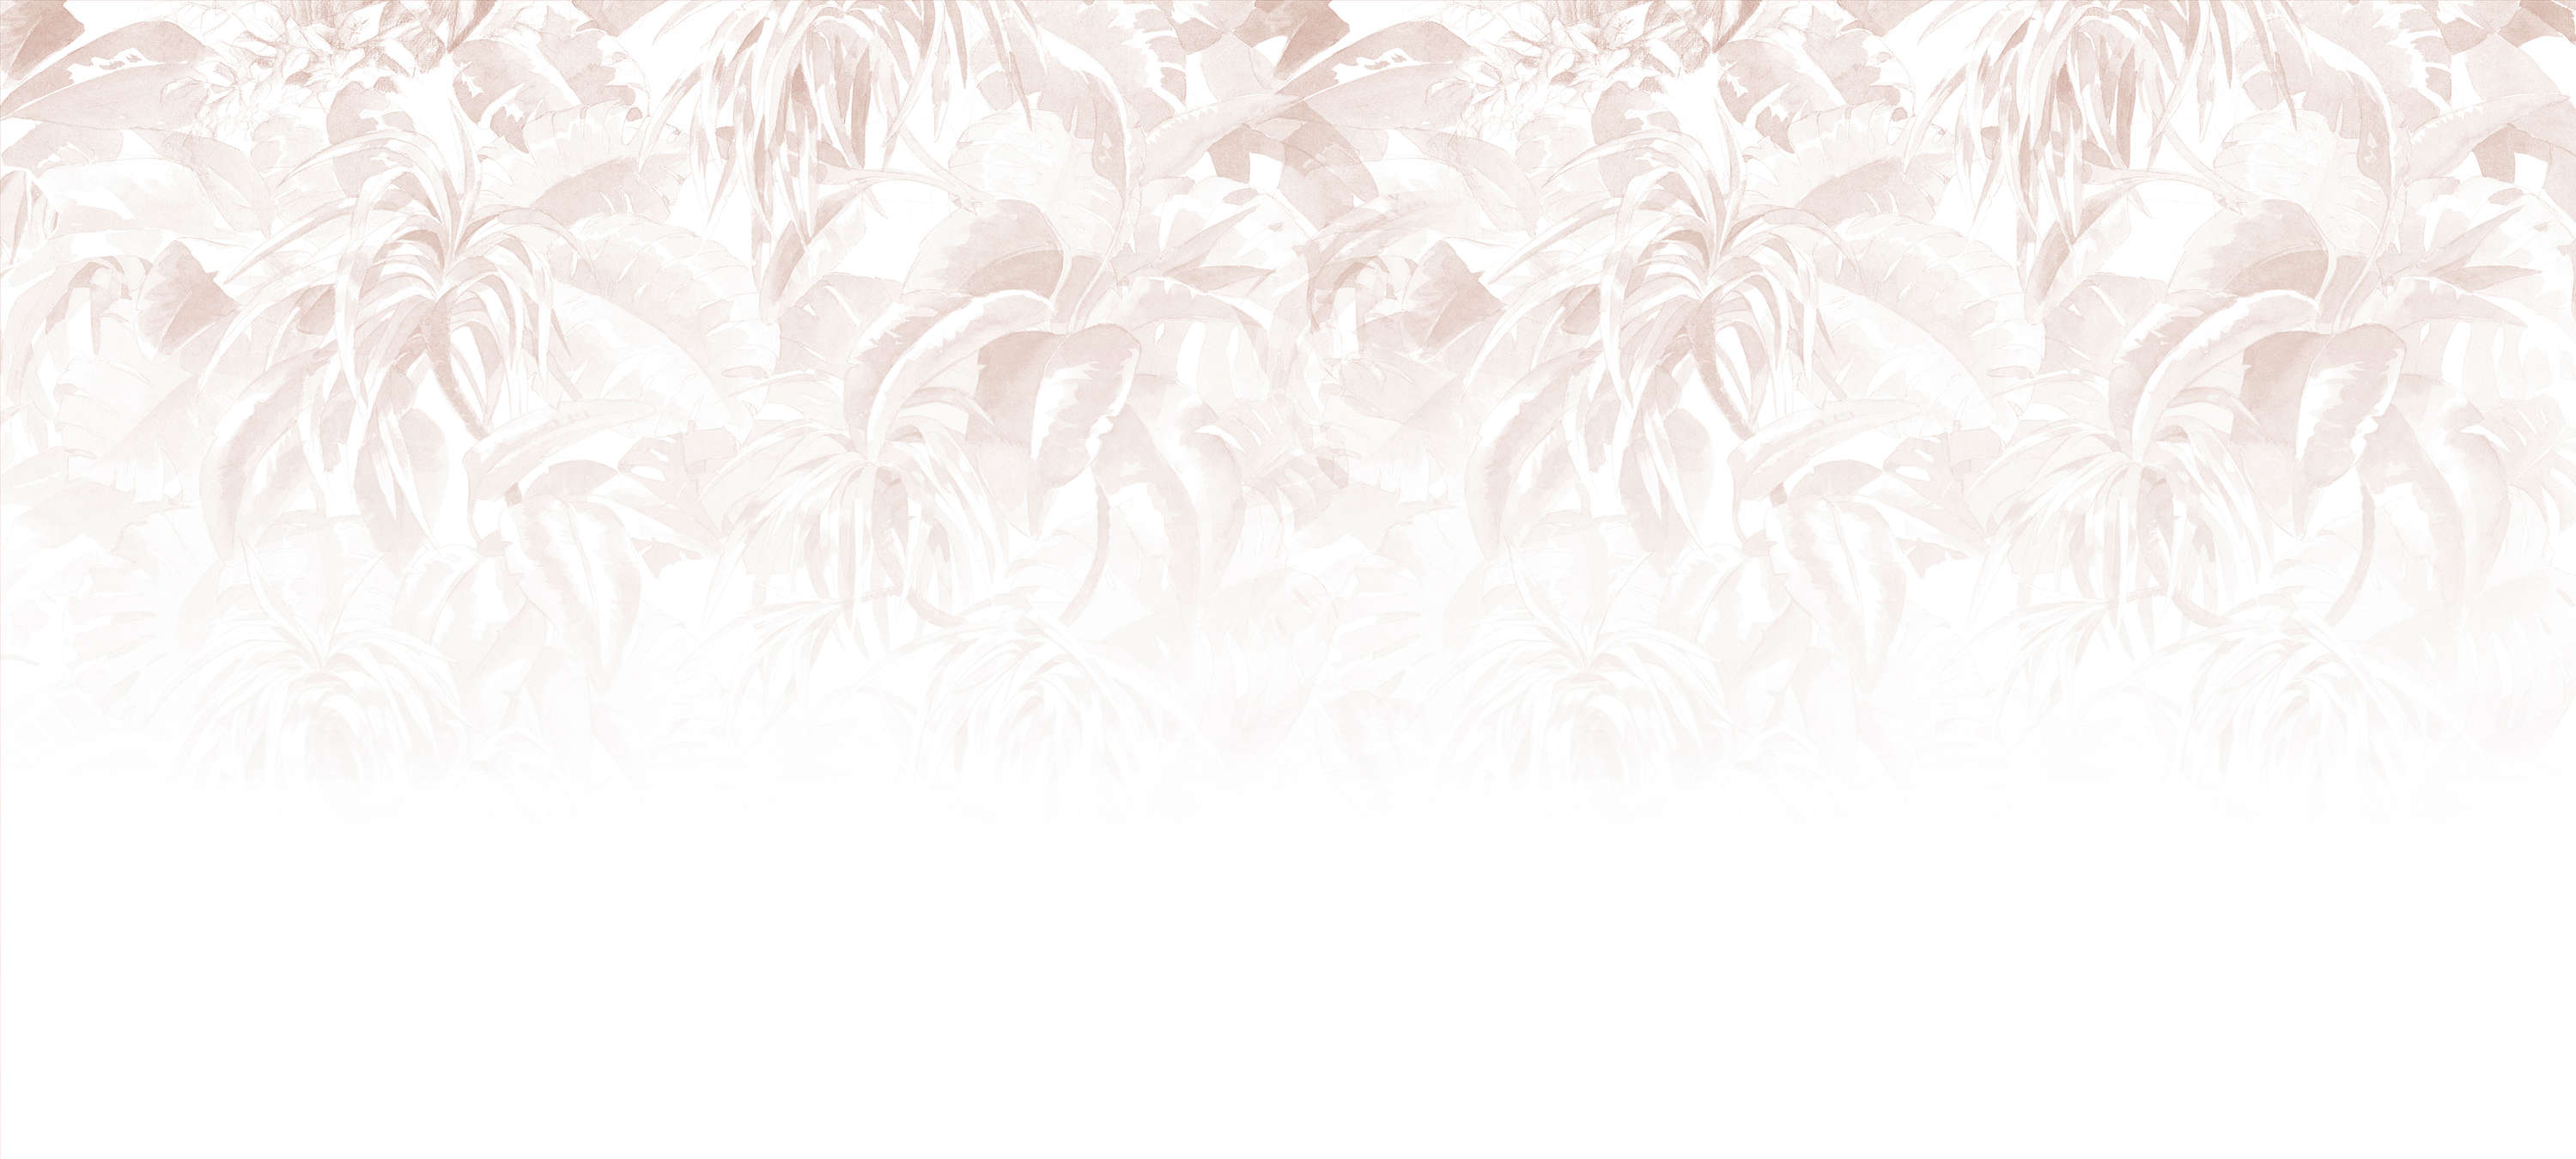             Papel pintado femenino y minimalista con motivos de hojas - rosa, blanco, gris
        